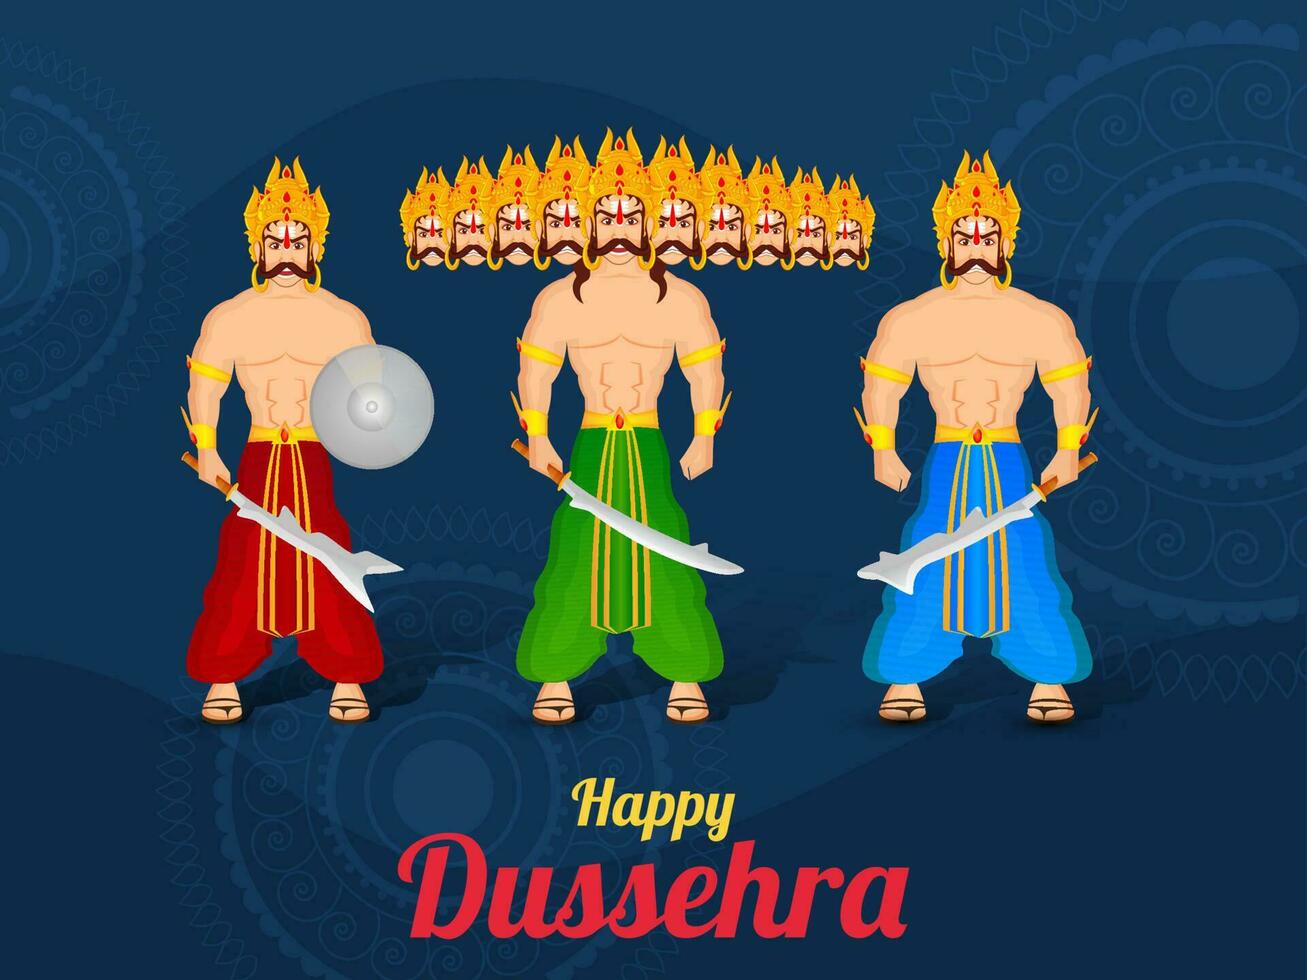 hindu mytologisk demon kung ravana med hans bror kumbhkarana och son meghnad stående tillsammans på de tillfälle av Dussehra festival. vektor